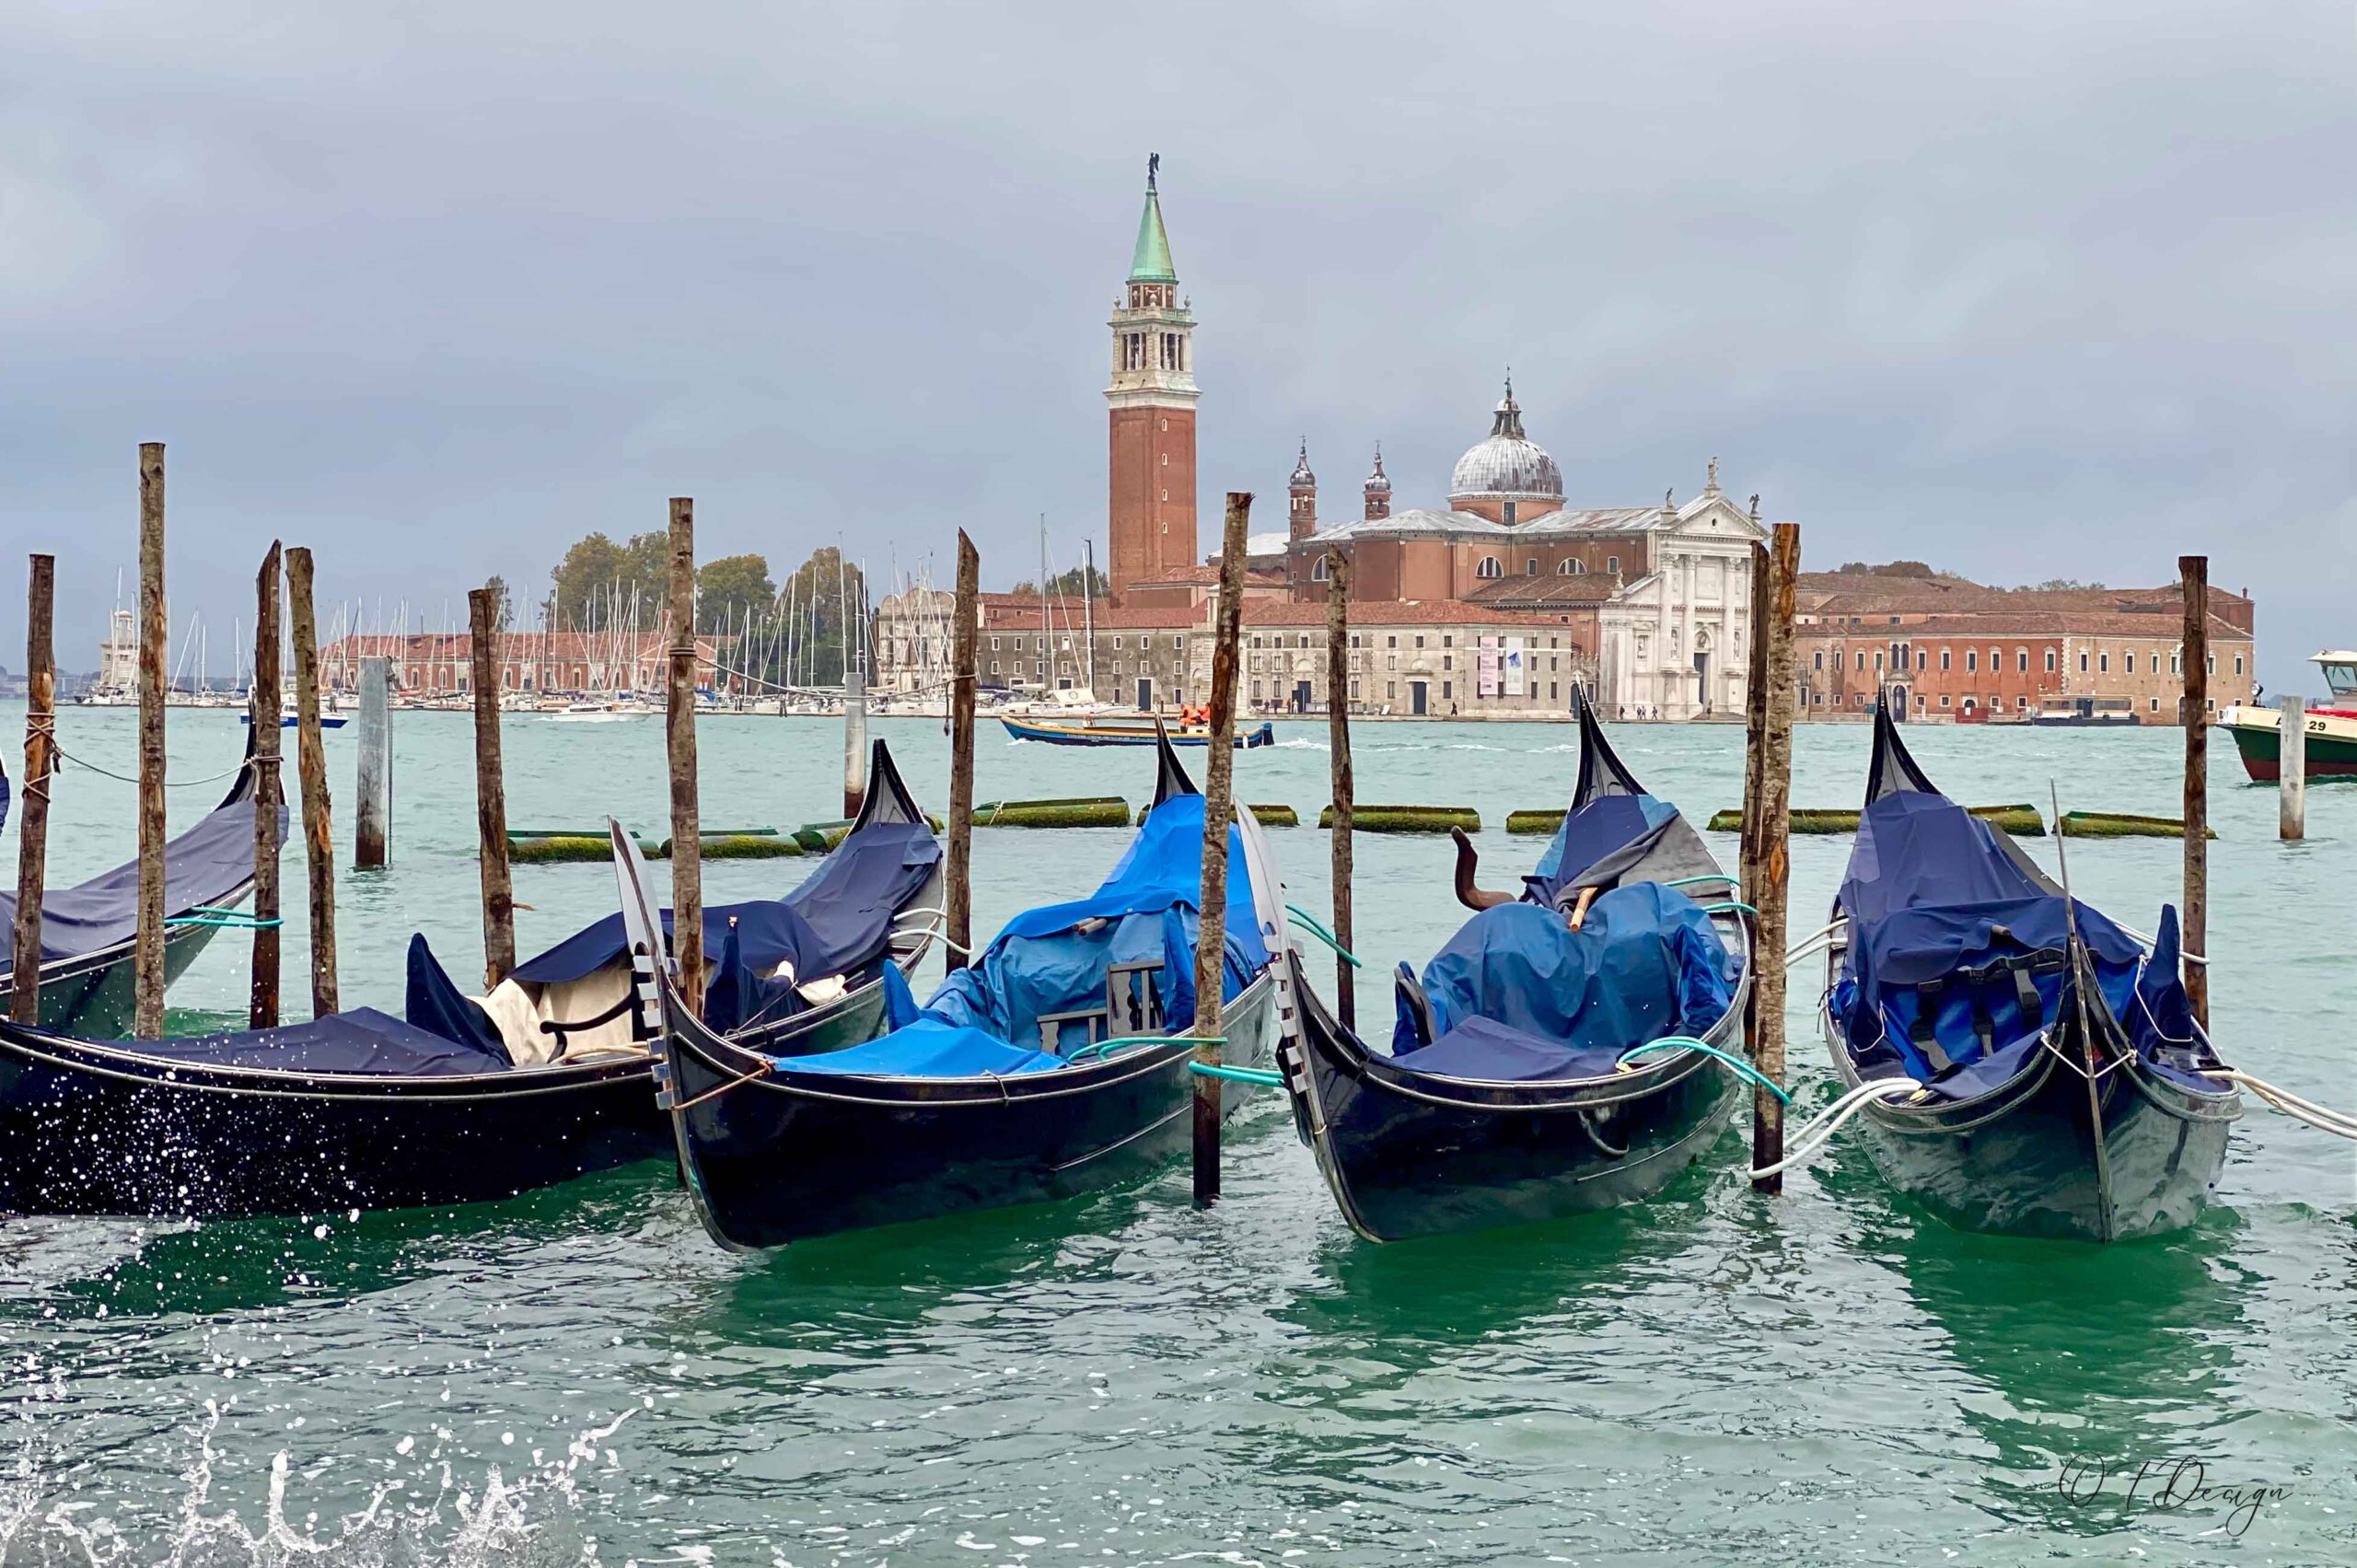 Gondolas on a rainy day in Venice, Italy